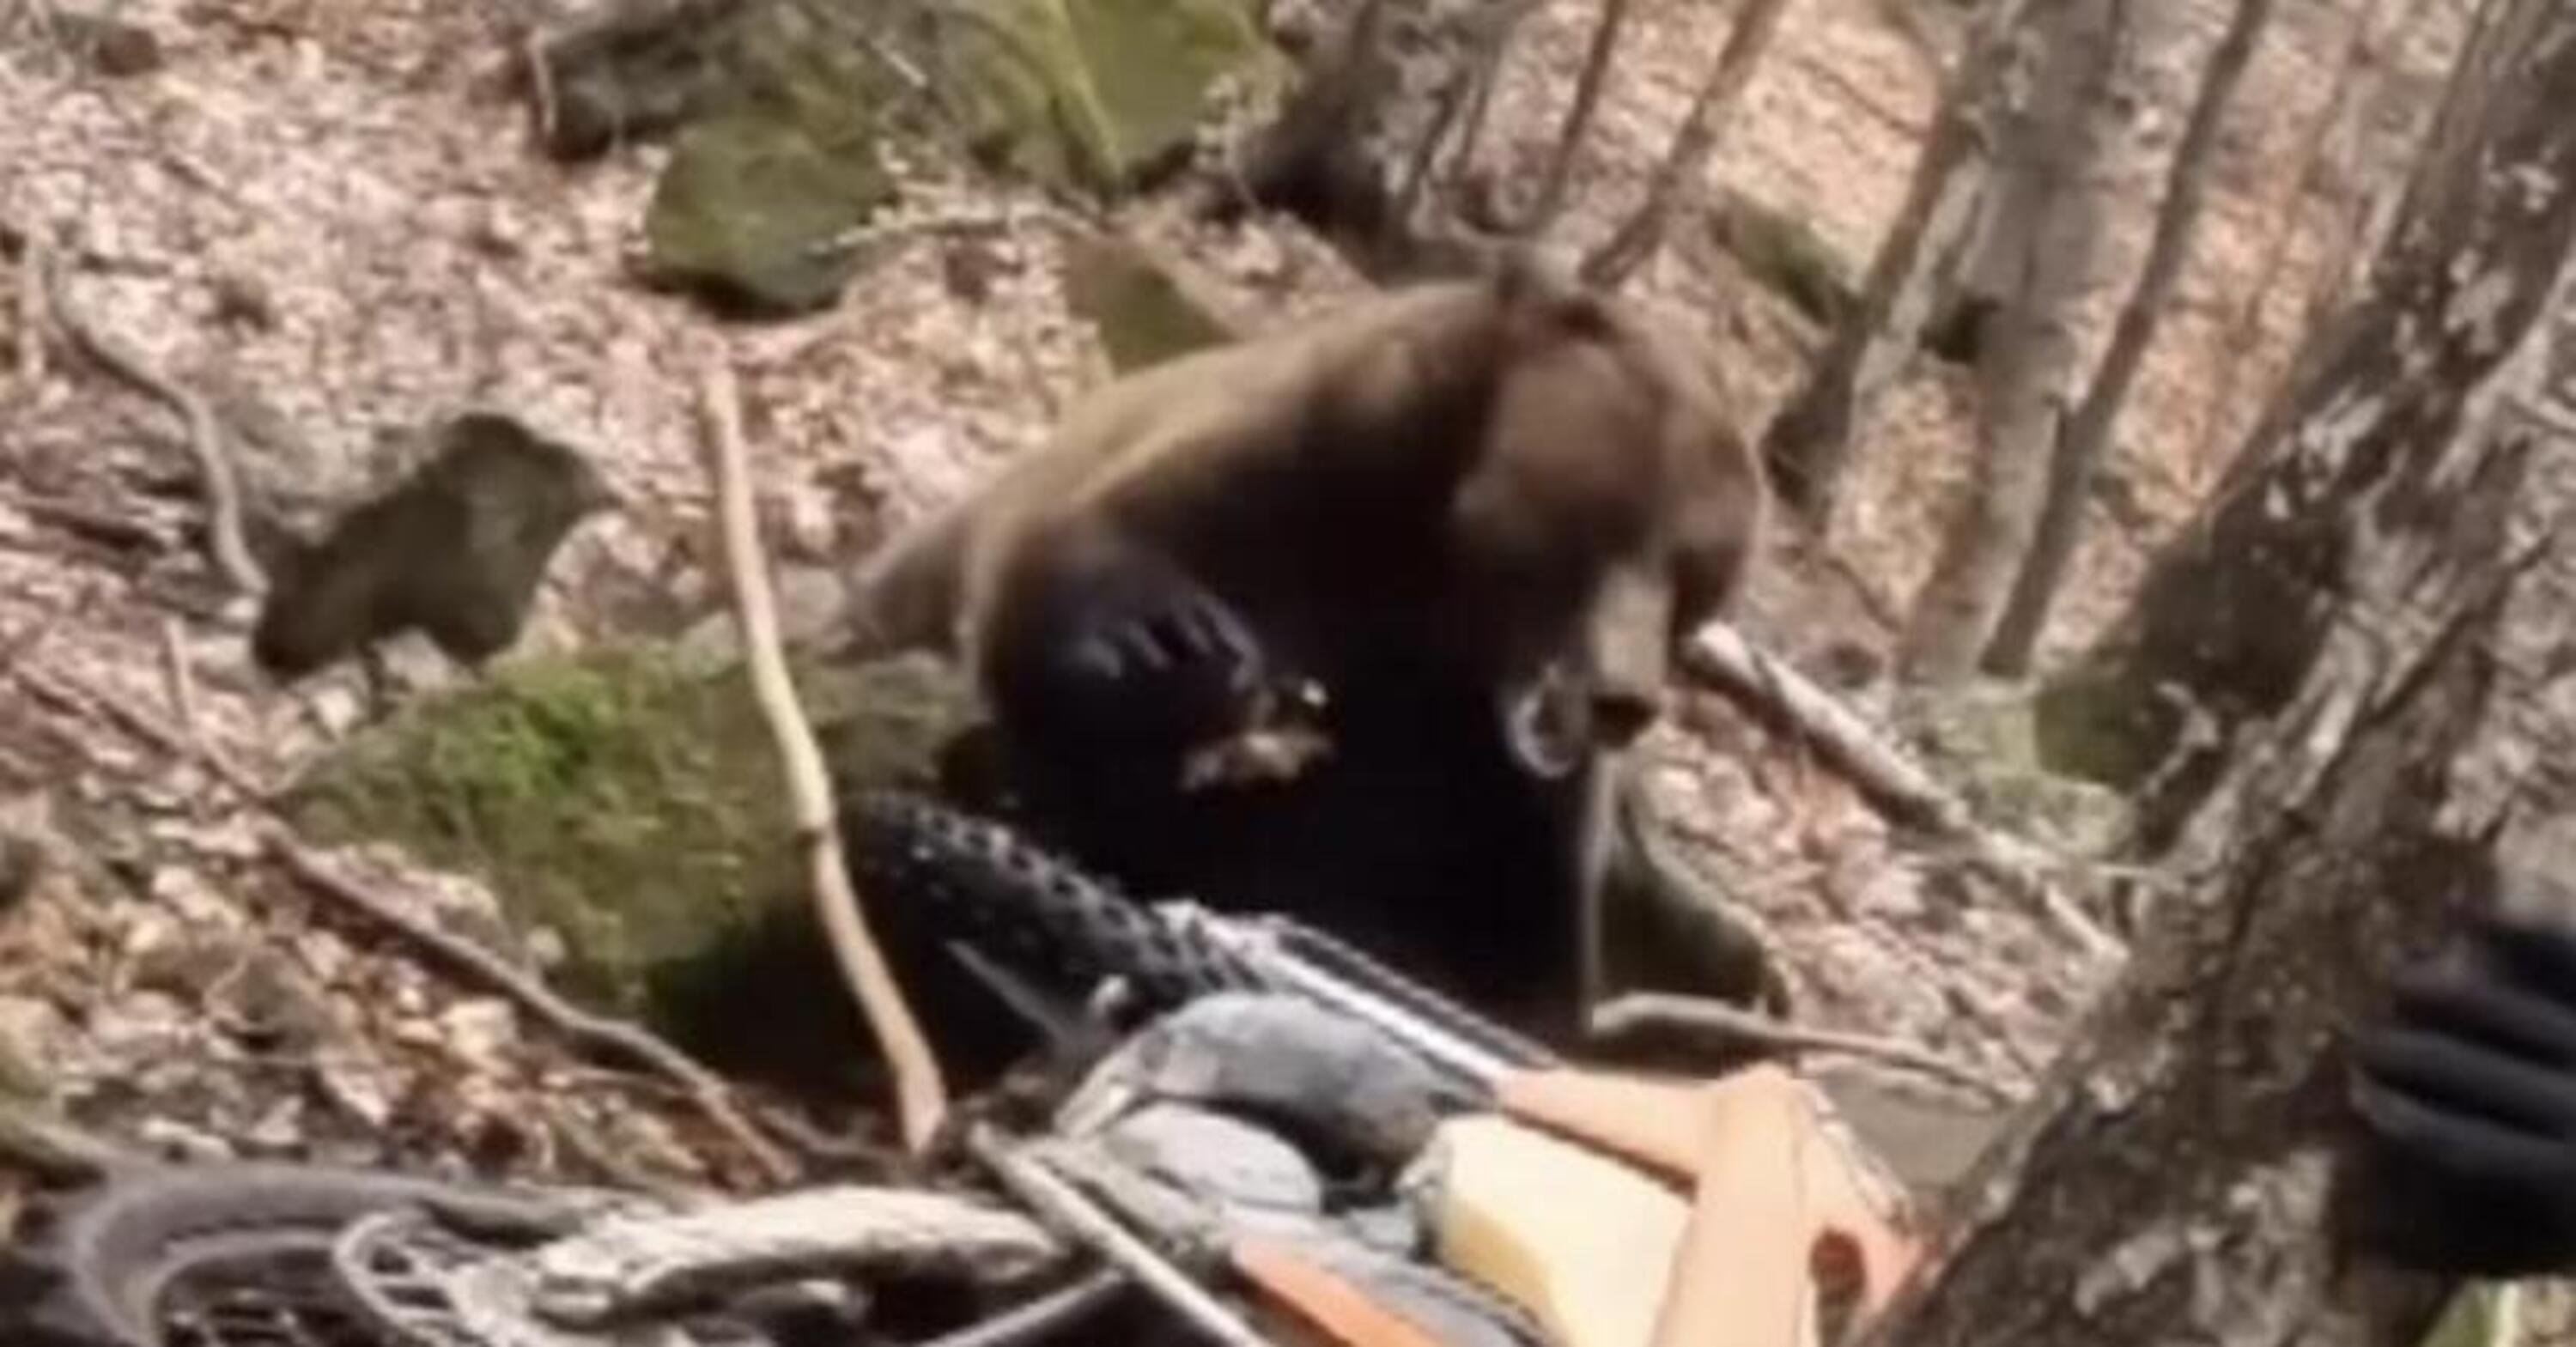 Endurista attaccato da un orso nel bosco, salvo grazie al rombo delle moto [VIDEO]